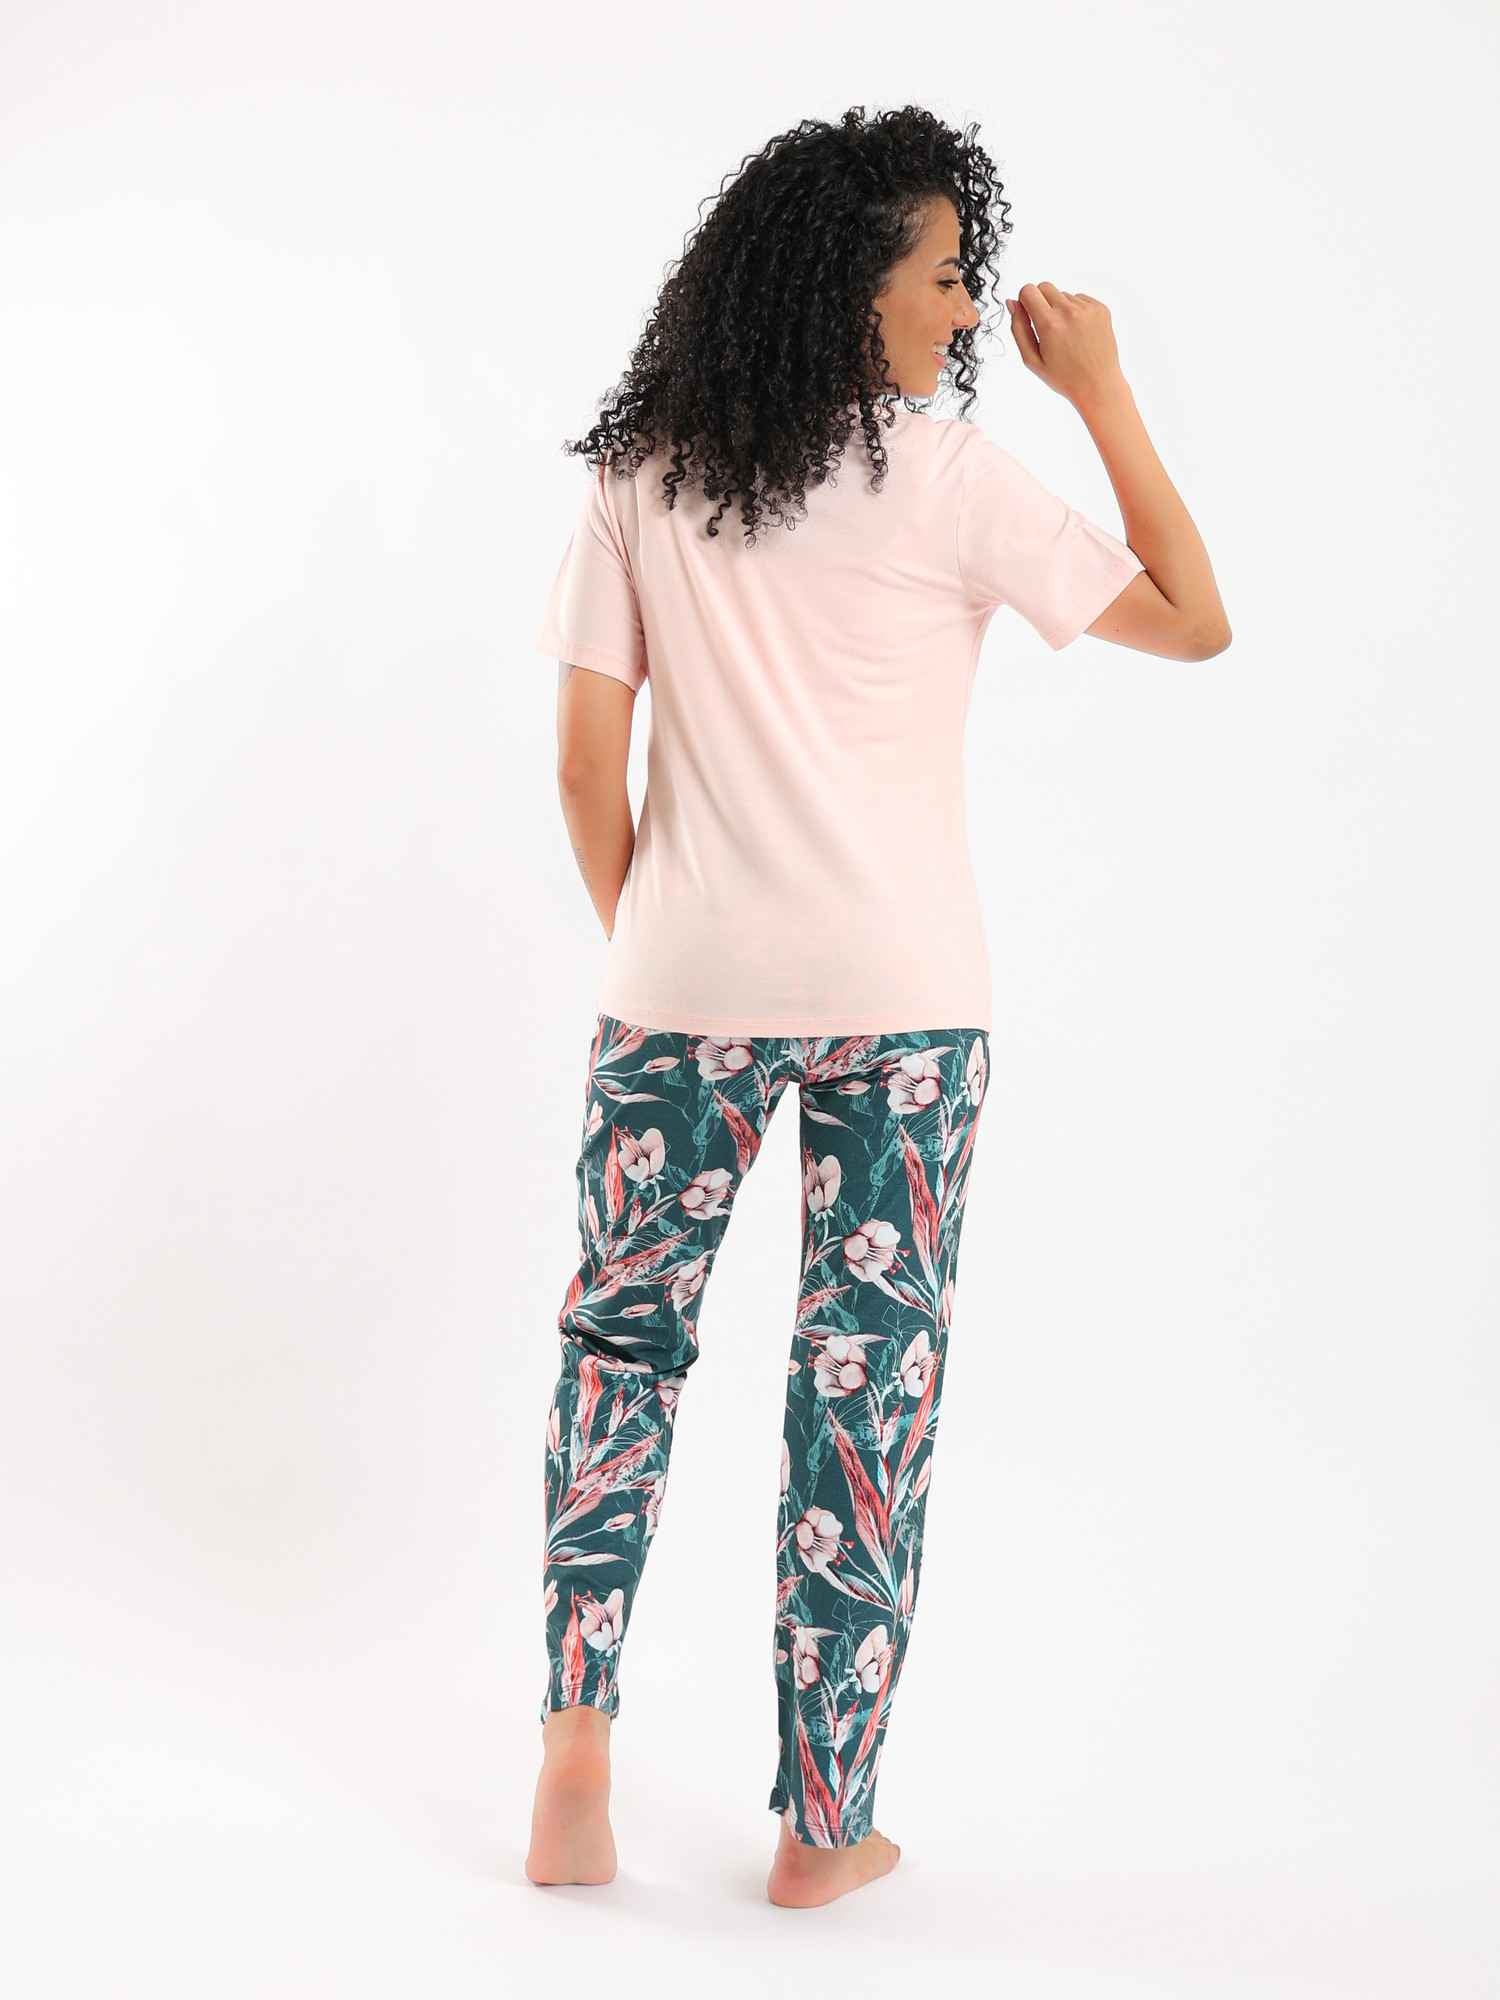 Red Cotton Women's Summer Pajama Set - Rose